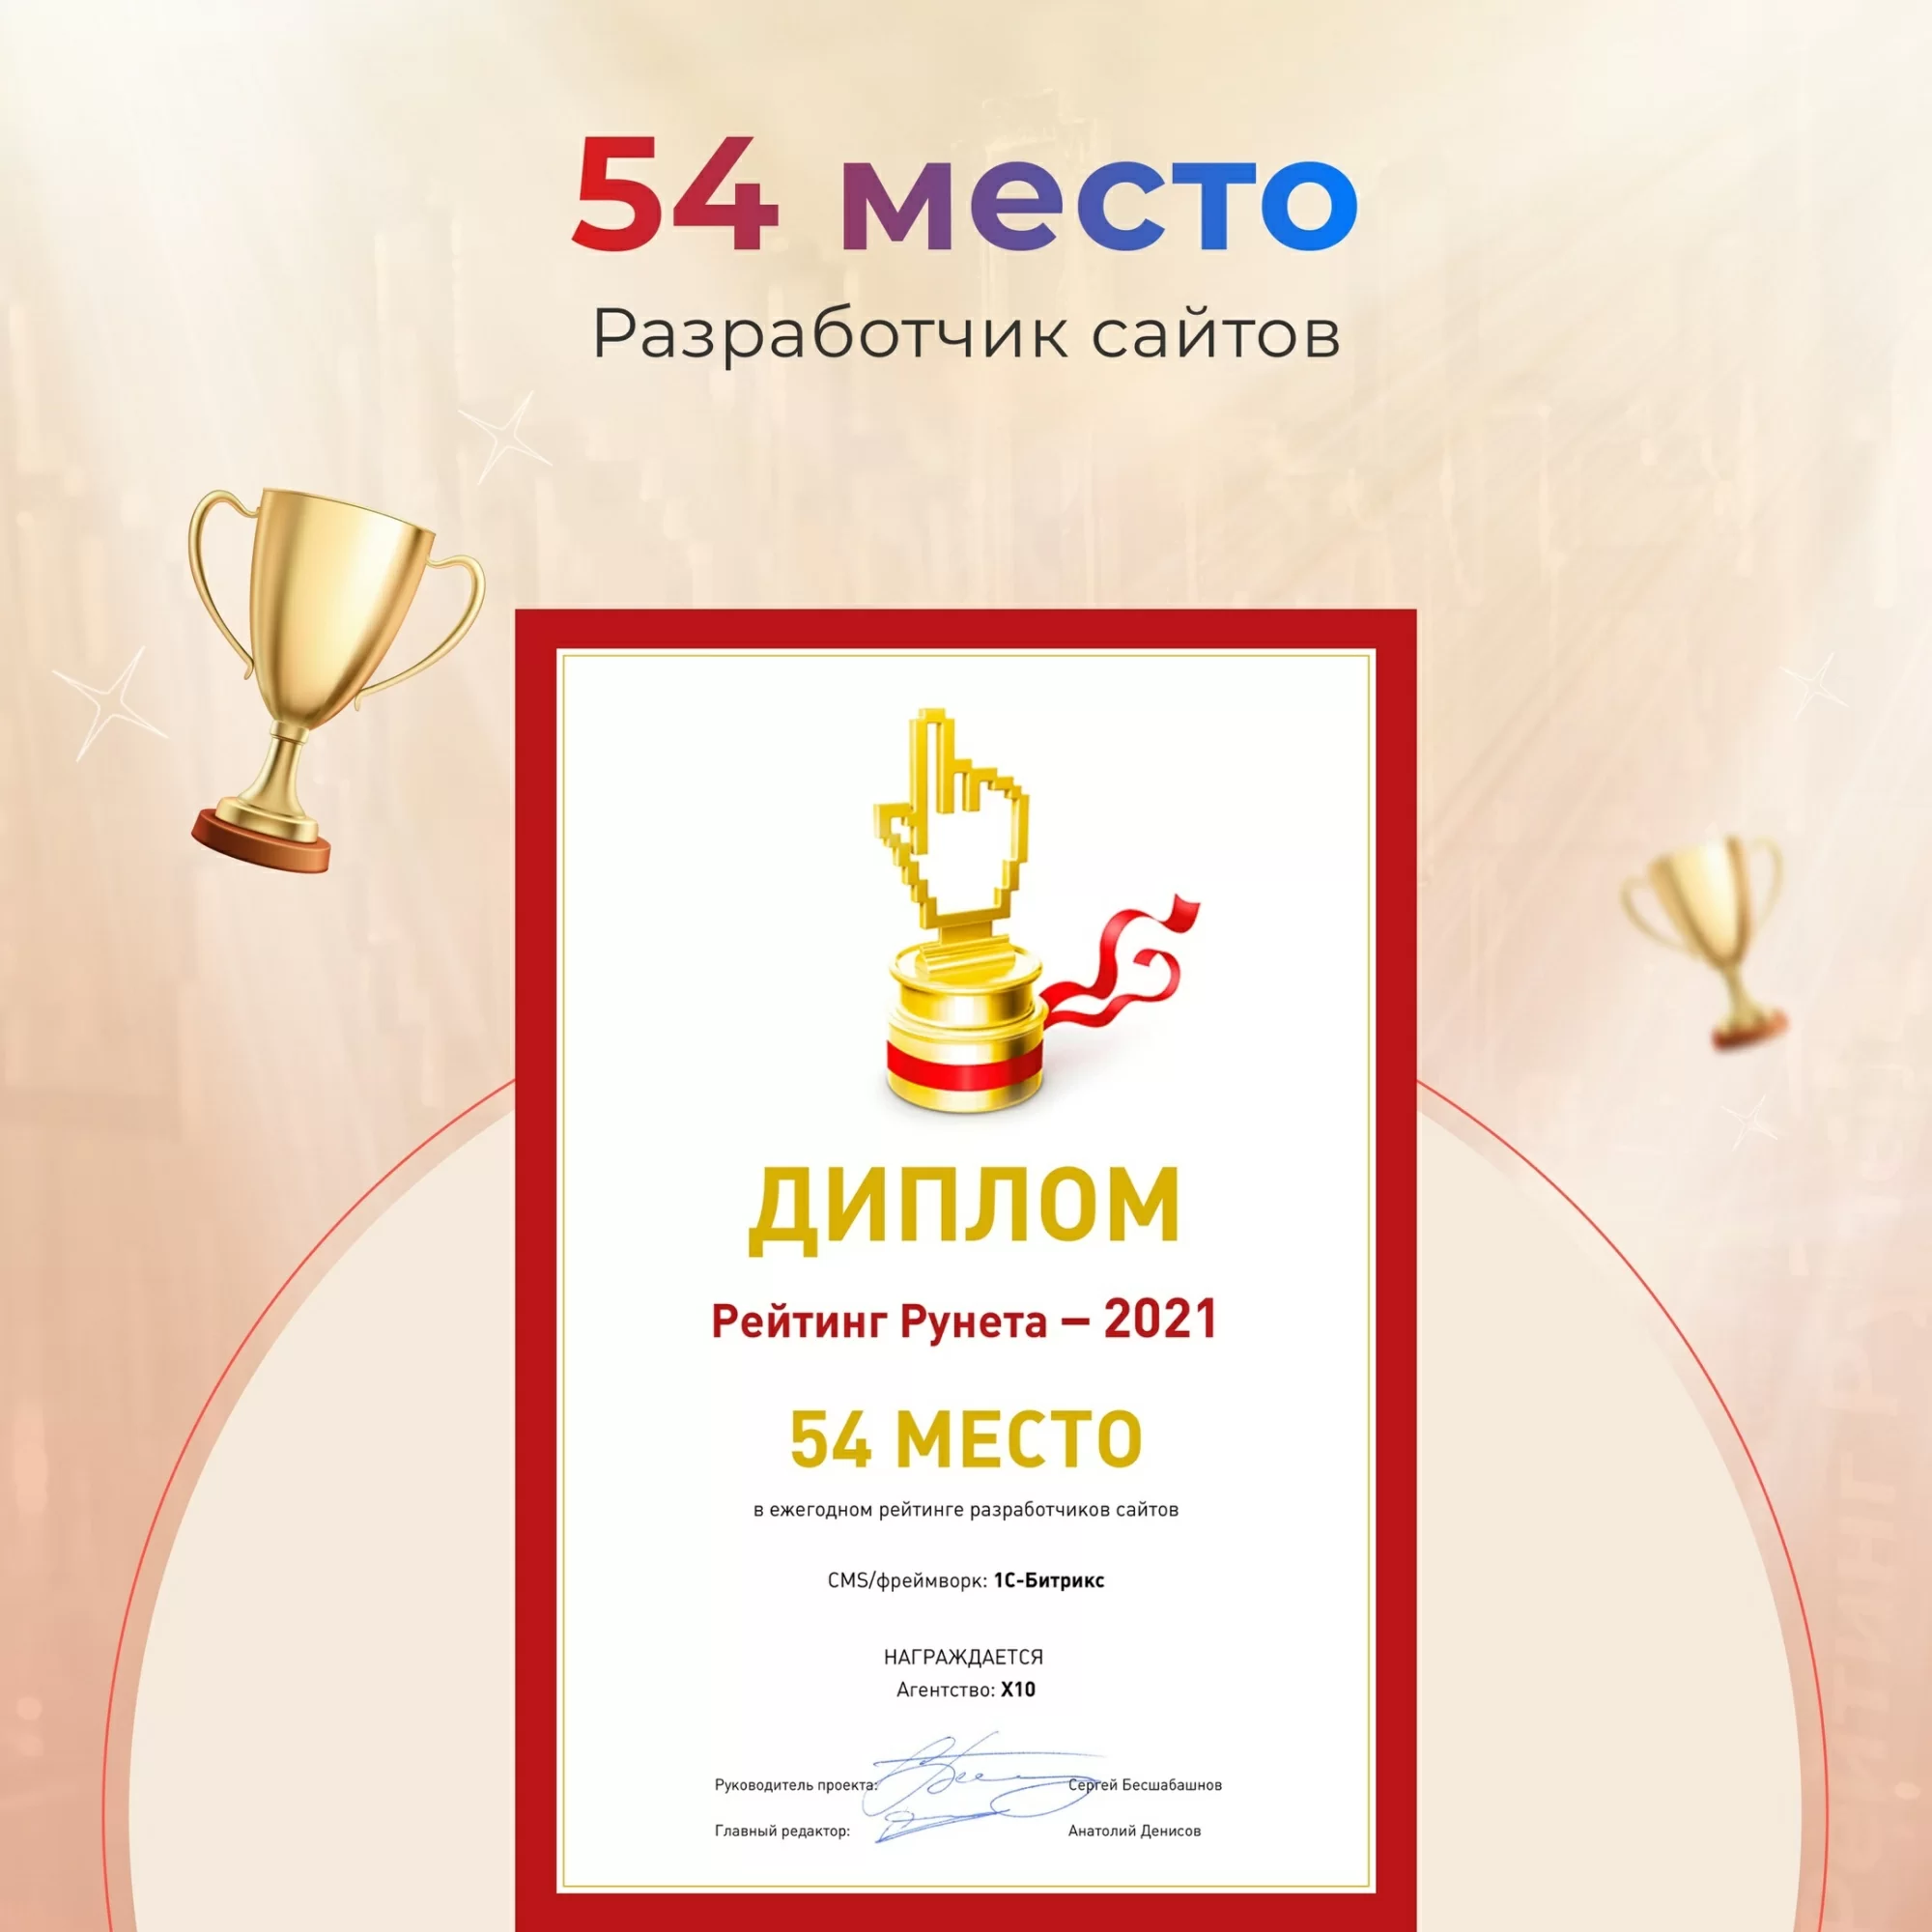 «Рейтинг Рунета» ТОП-55 Рейтинг лучших разработчиков сайтов на 1С-Битрикс